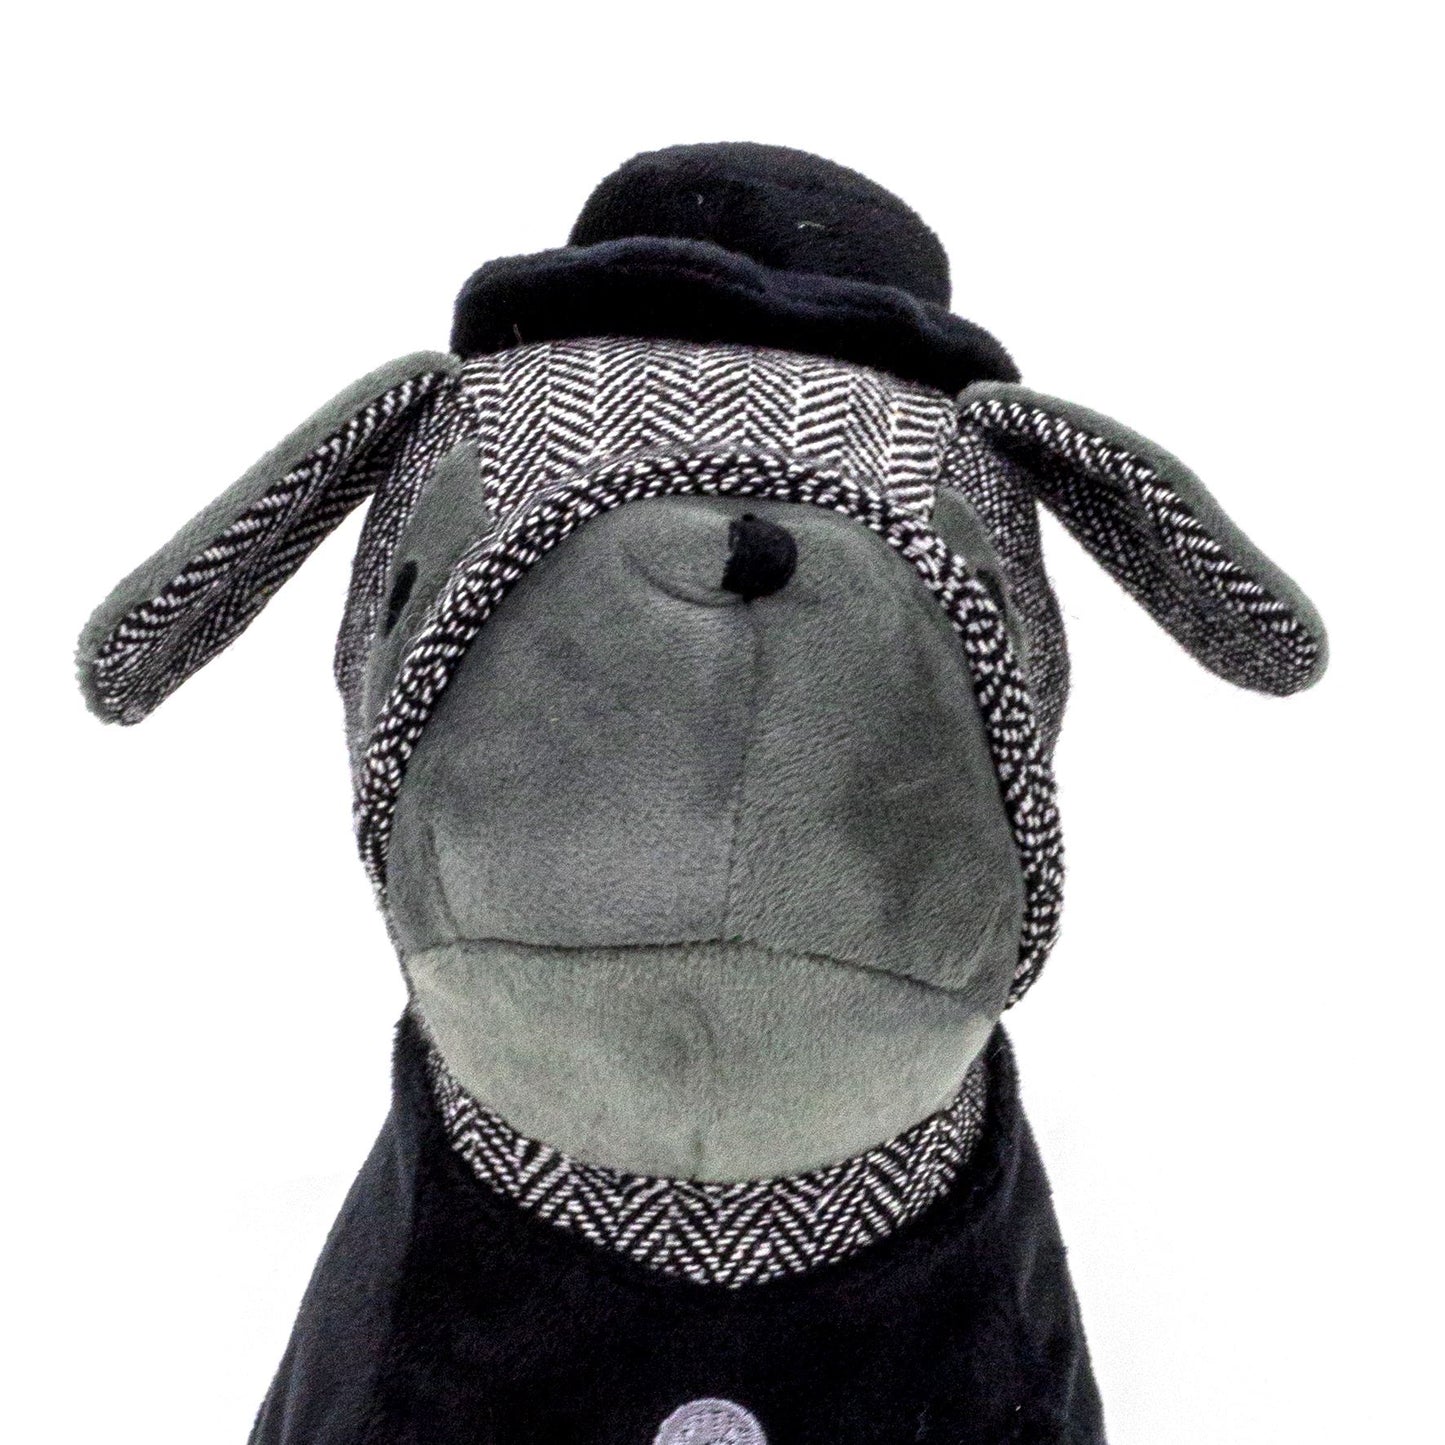 Bulldog Doorstop Herringbone Fabric Dog Door Stop With Hat And Waistcoat - Black